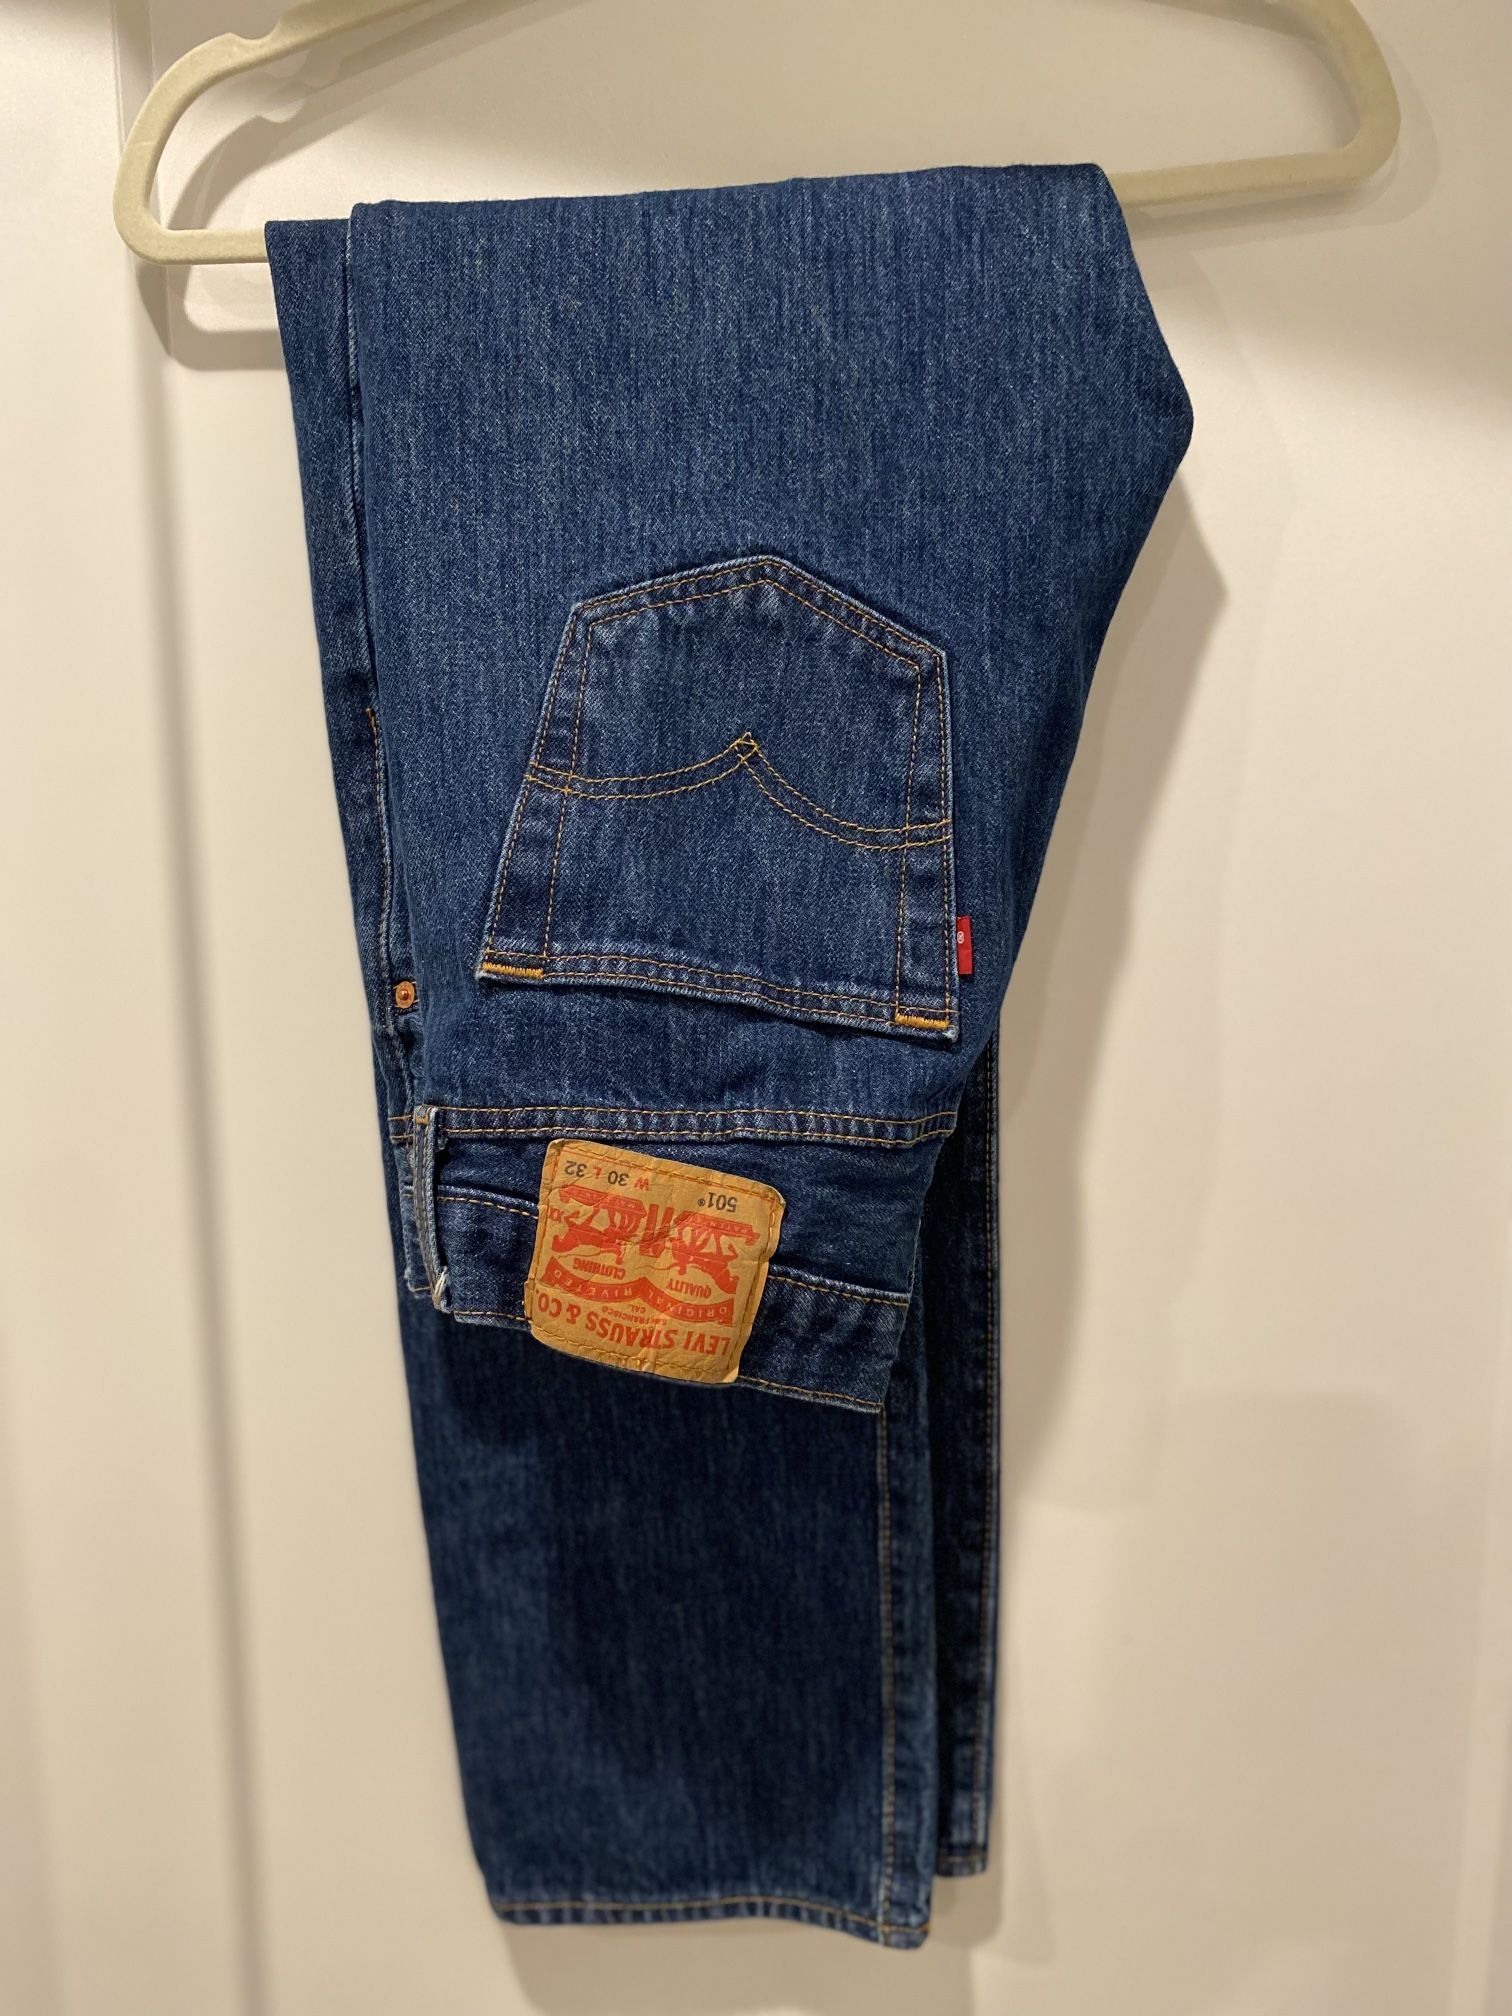 Levi 501’s jeans